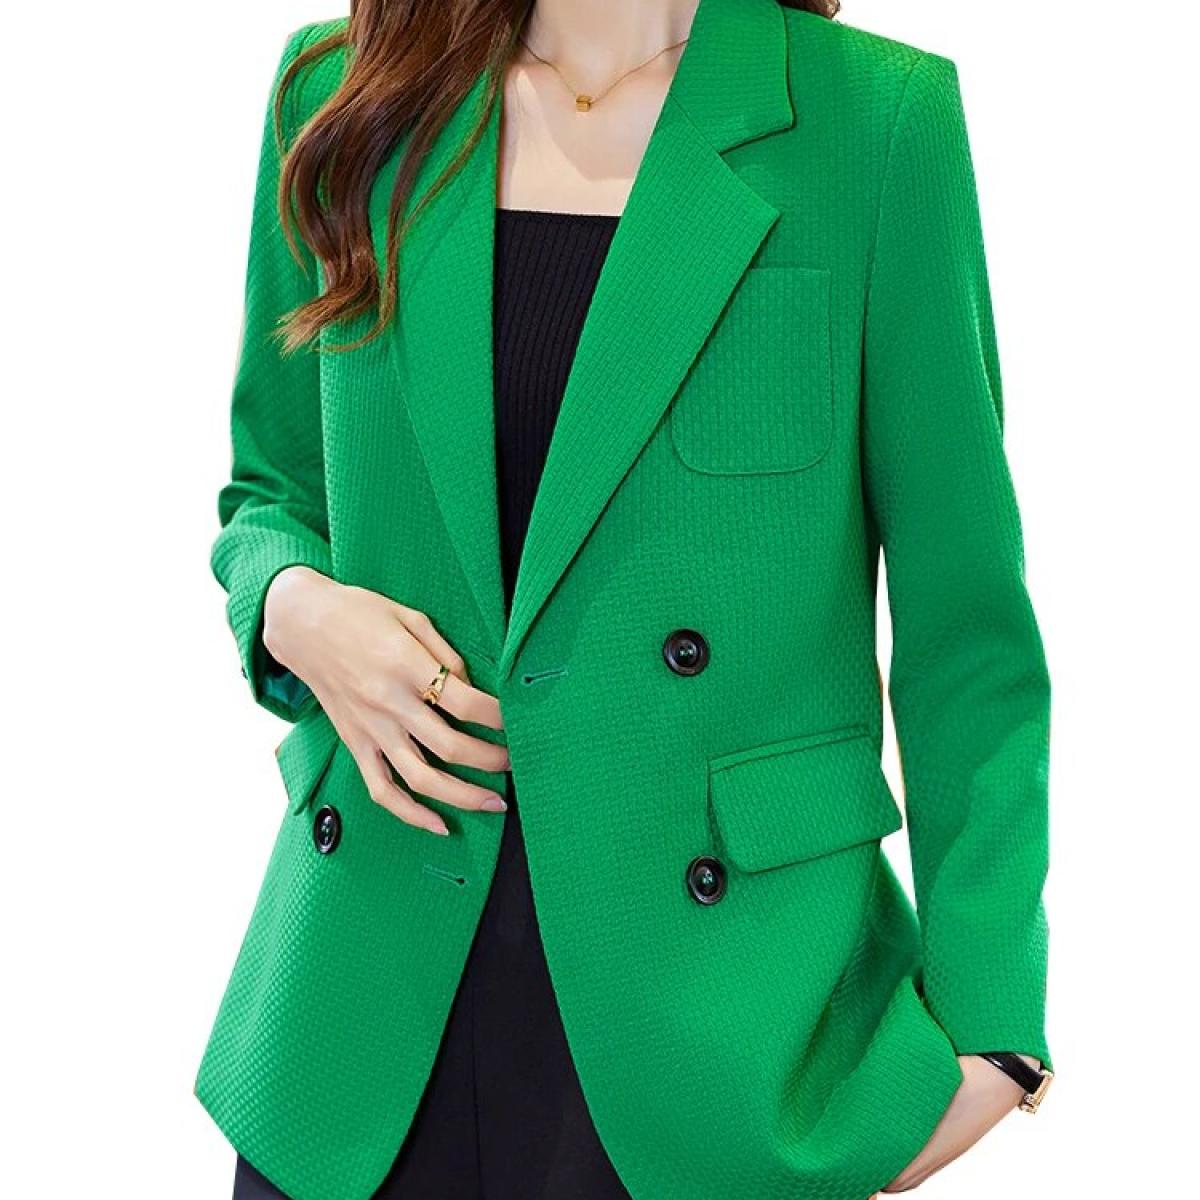 אופנה נשים בגדי עבודה בלייזר משרד נשים נקבה כתום שחור ירוק משובץ שרוולים ארוכים מעיל רשמי עם חזה חד ג